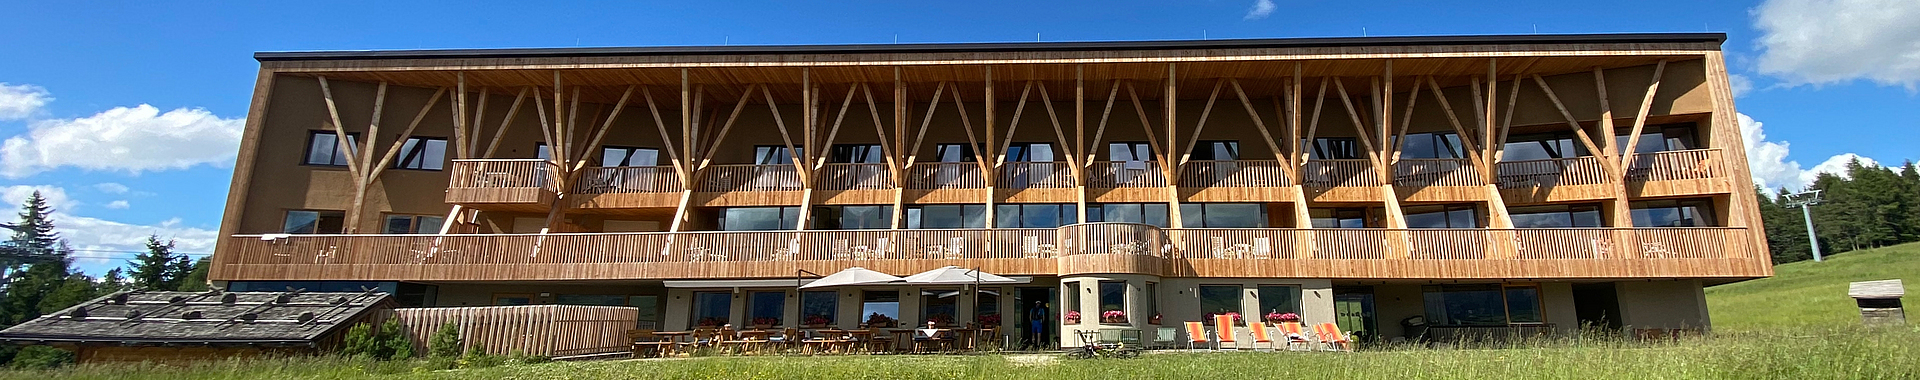 Holzfassade des Gebäudes inmitten einer Wiese in den Alpen.